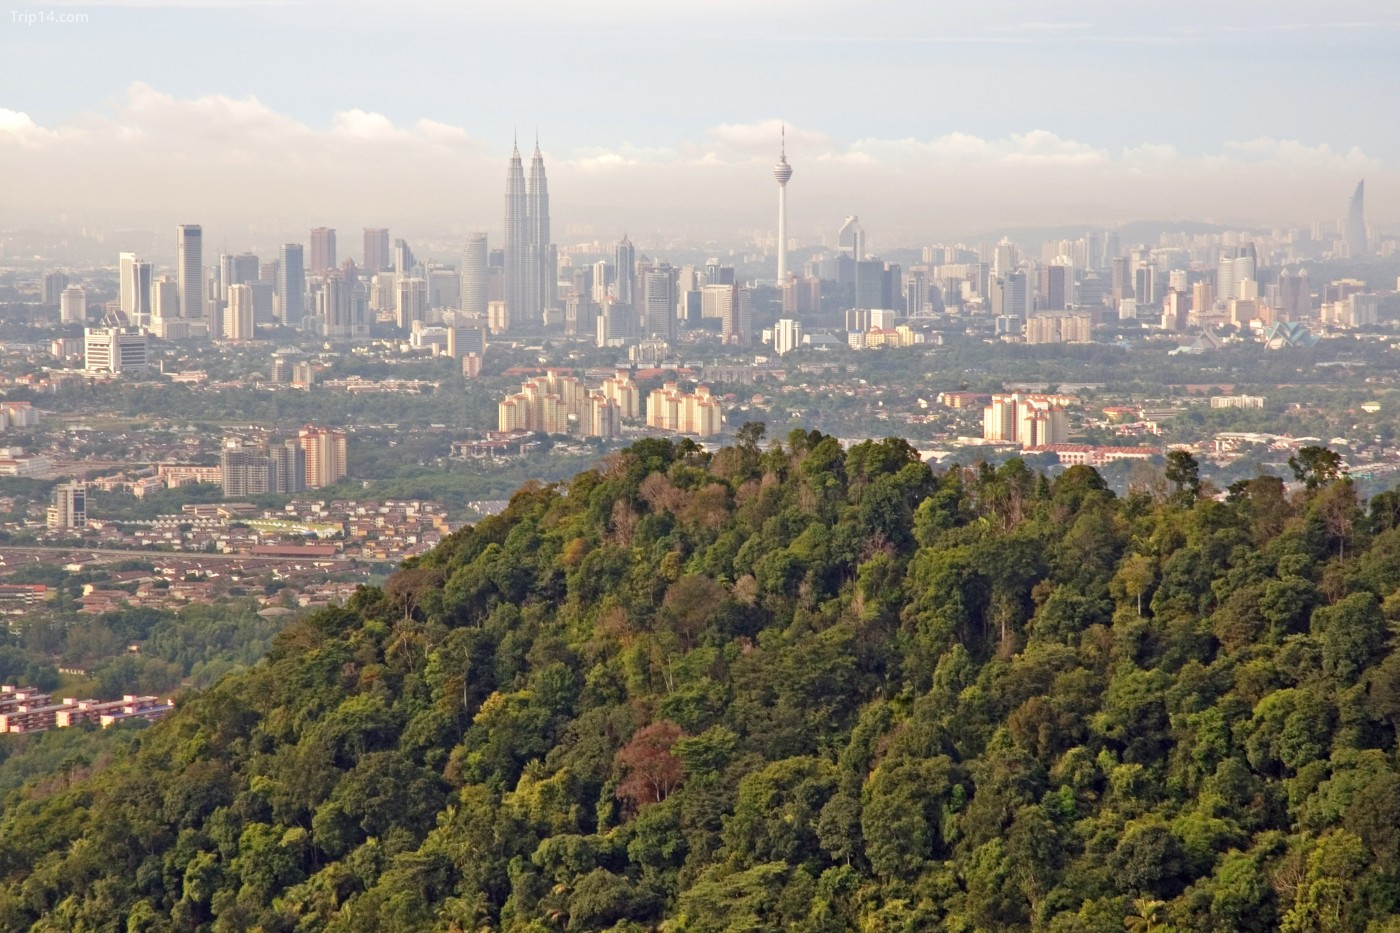 Natural vs Concrete Jungle một góc thành phố Kuala Lumpur nhìn từ sườn núi thạch anh Bukit Tabur